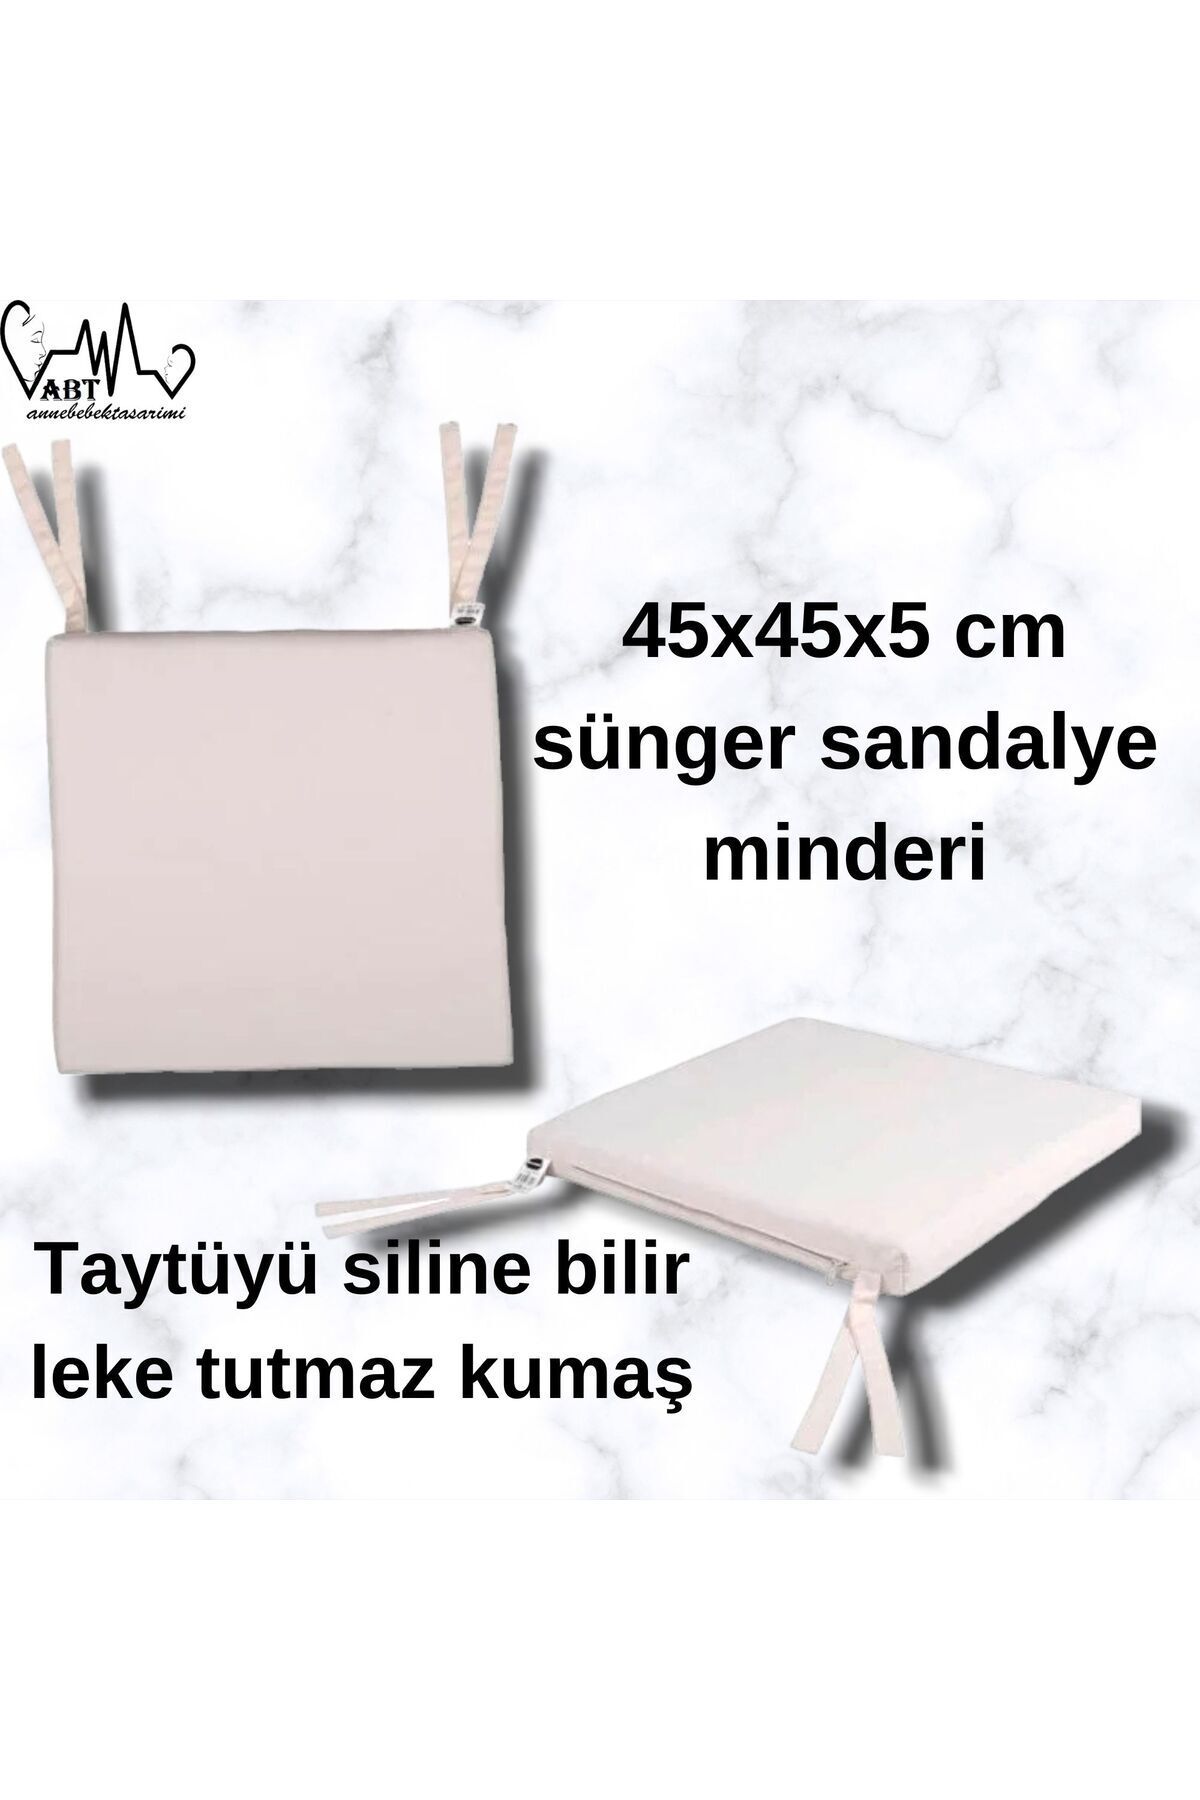 ABTtoysshop Taytüyü Kumaş Kaplı Sünger Modern Kare Sandalye Minderi 45x45x5 cm 1 adet